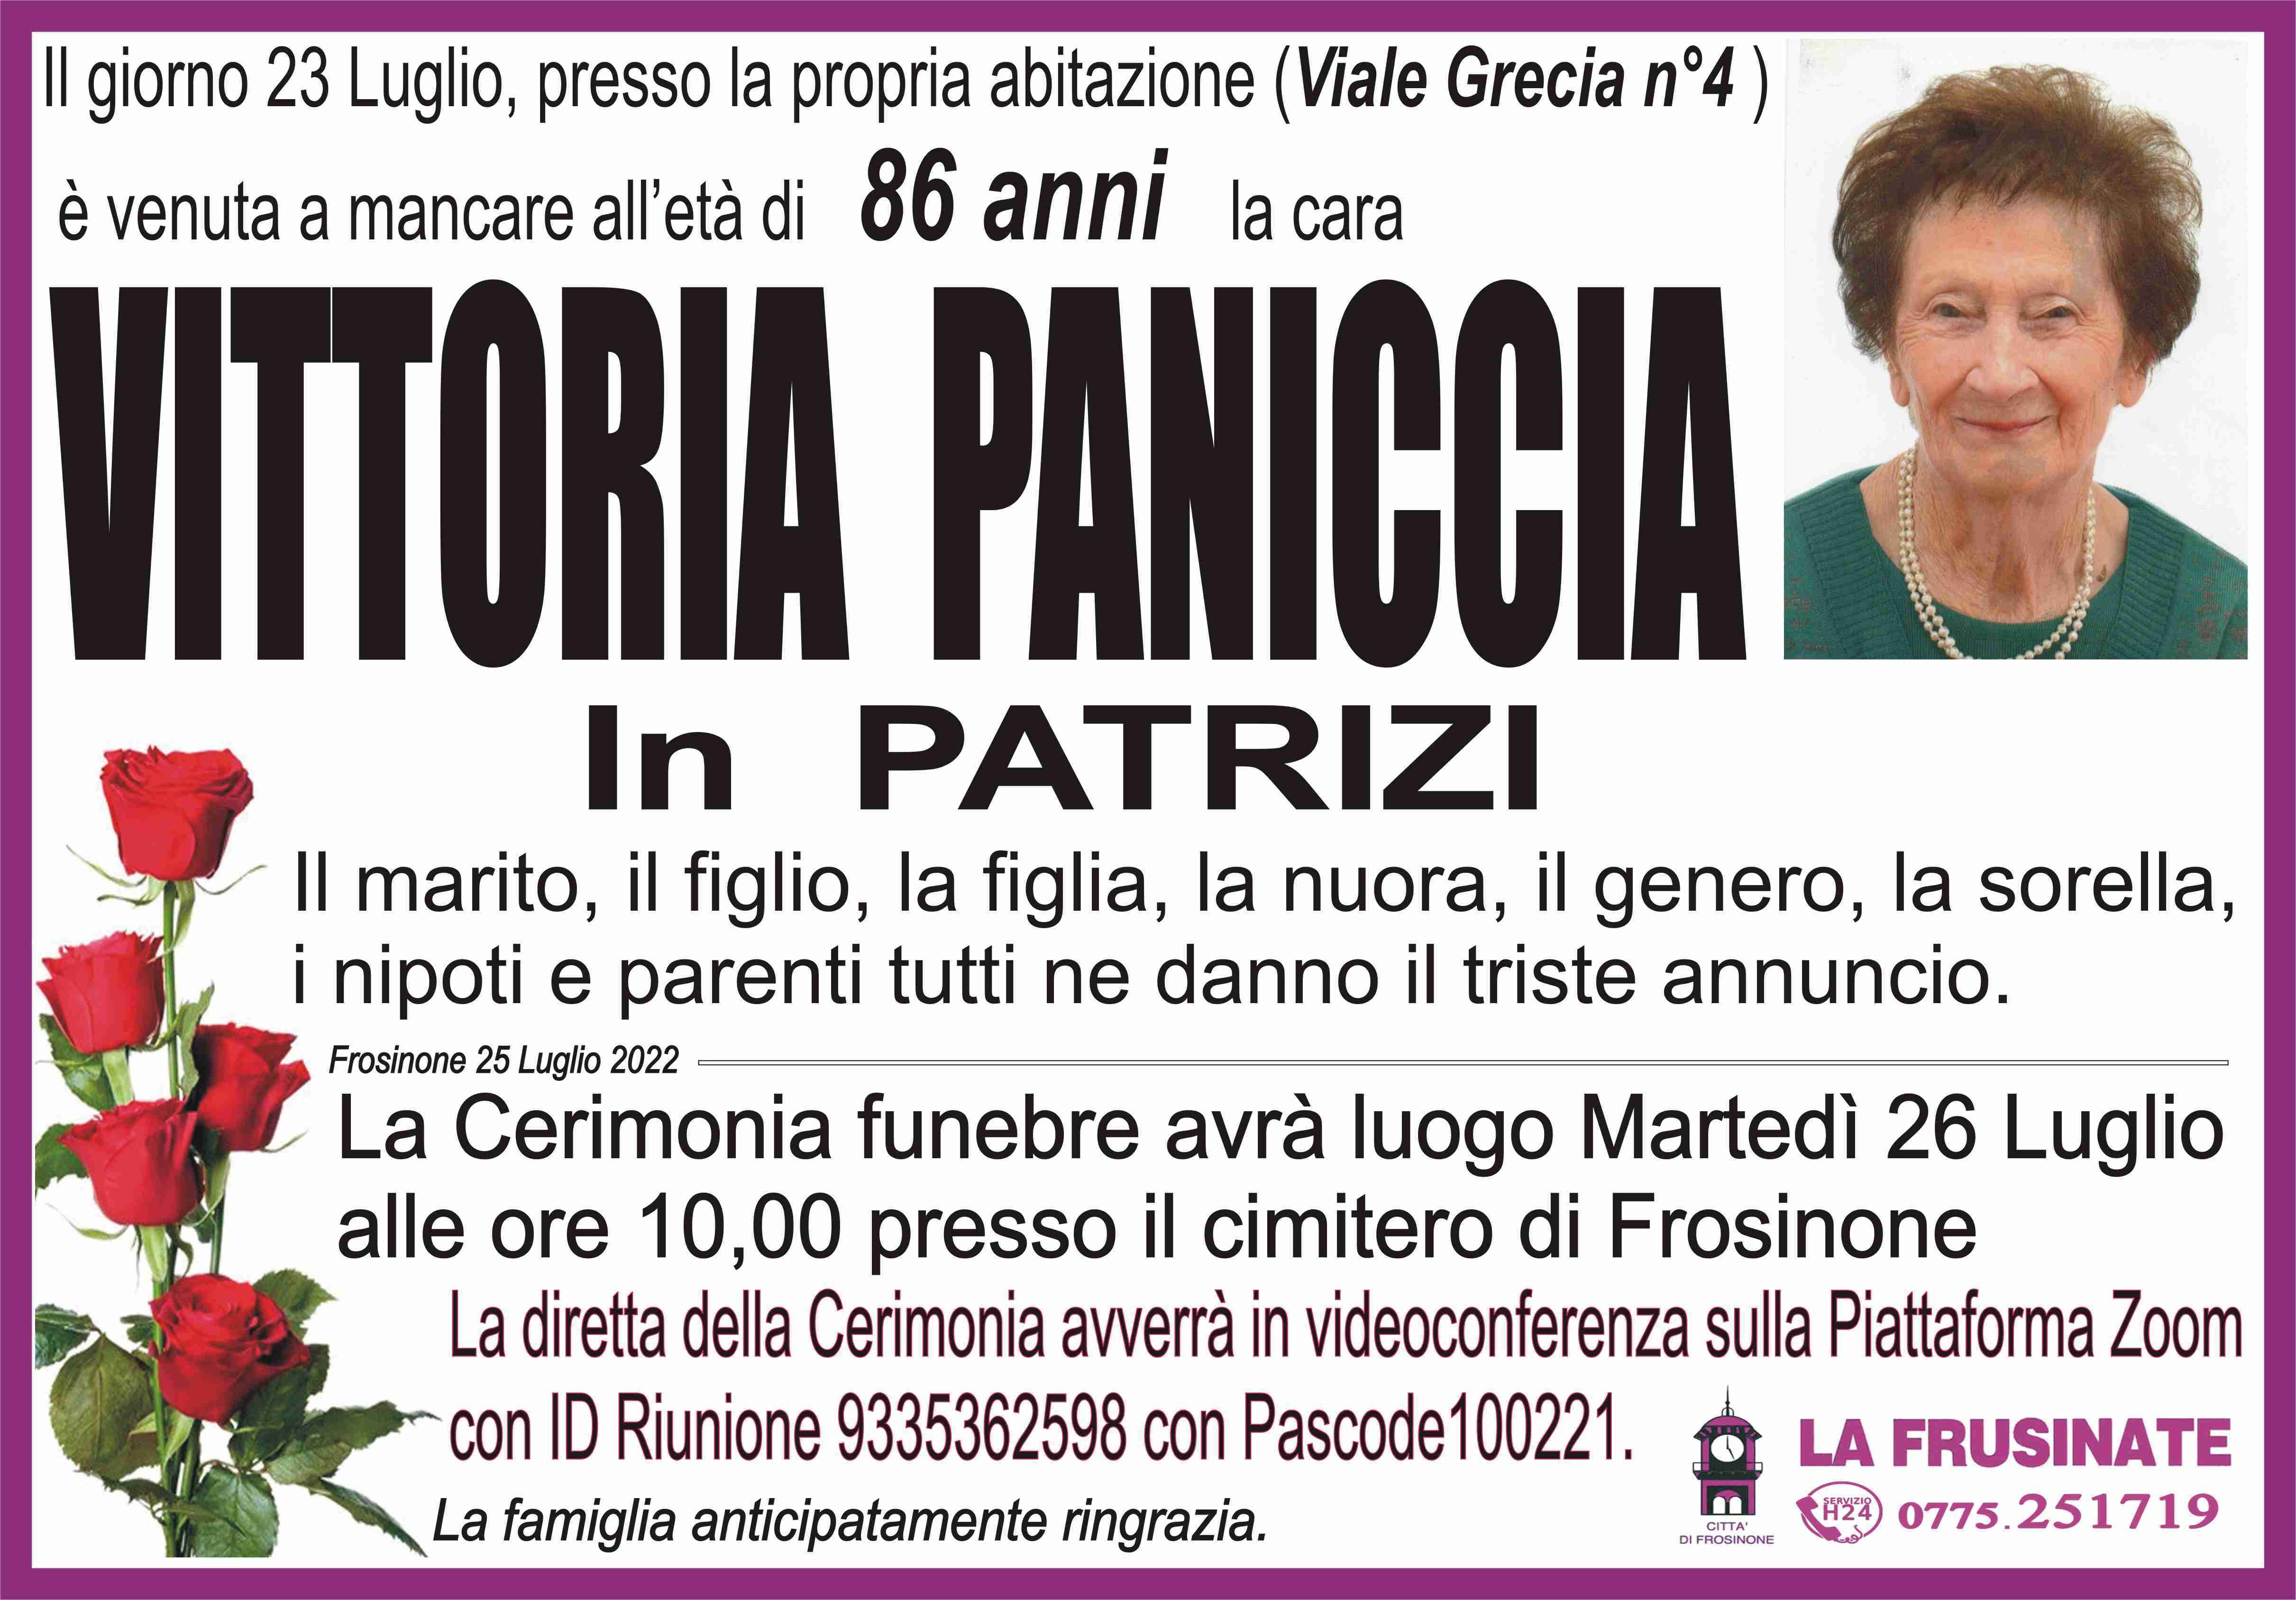 Vittoria Paniccia